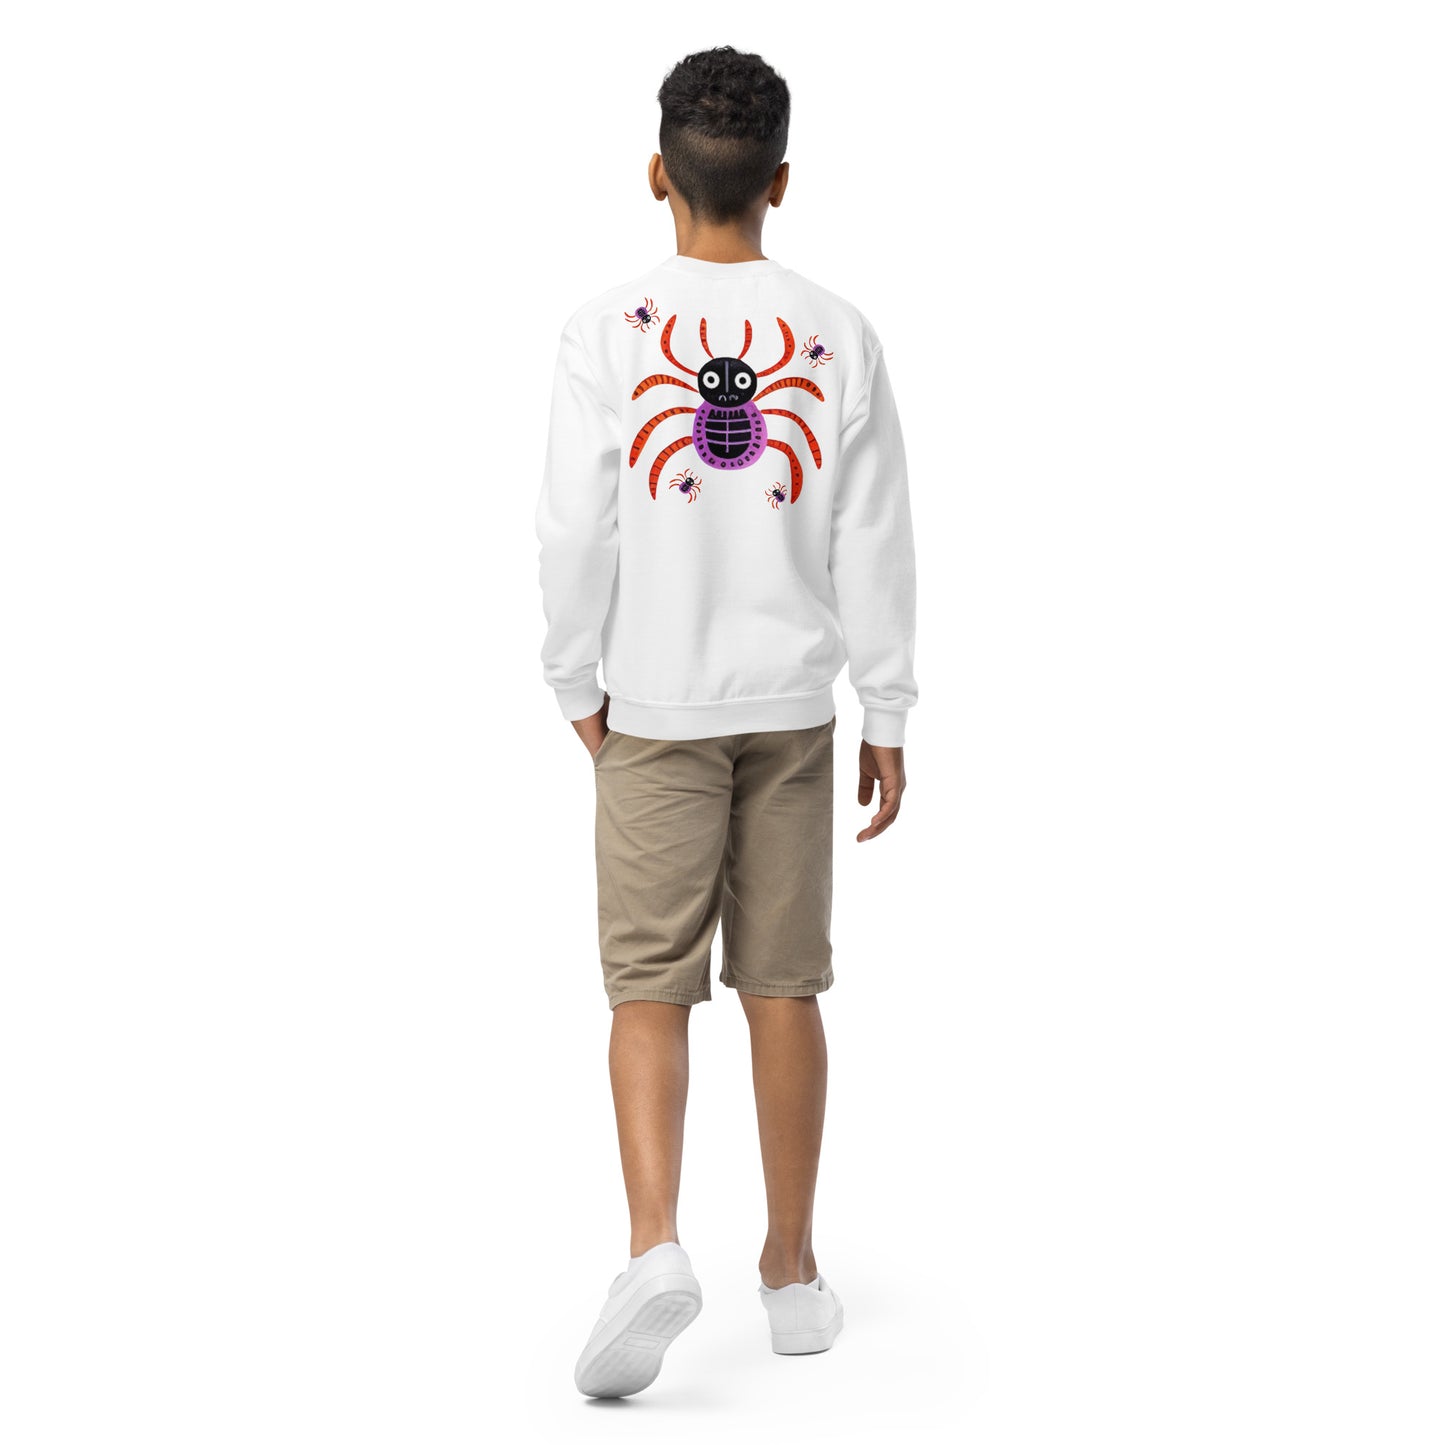 Striped Spider Critter #01 Youth crewneck sweatshirt